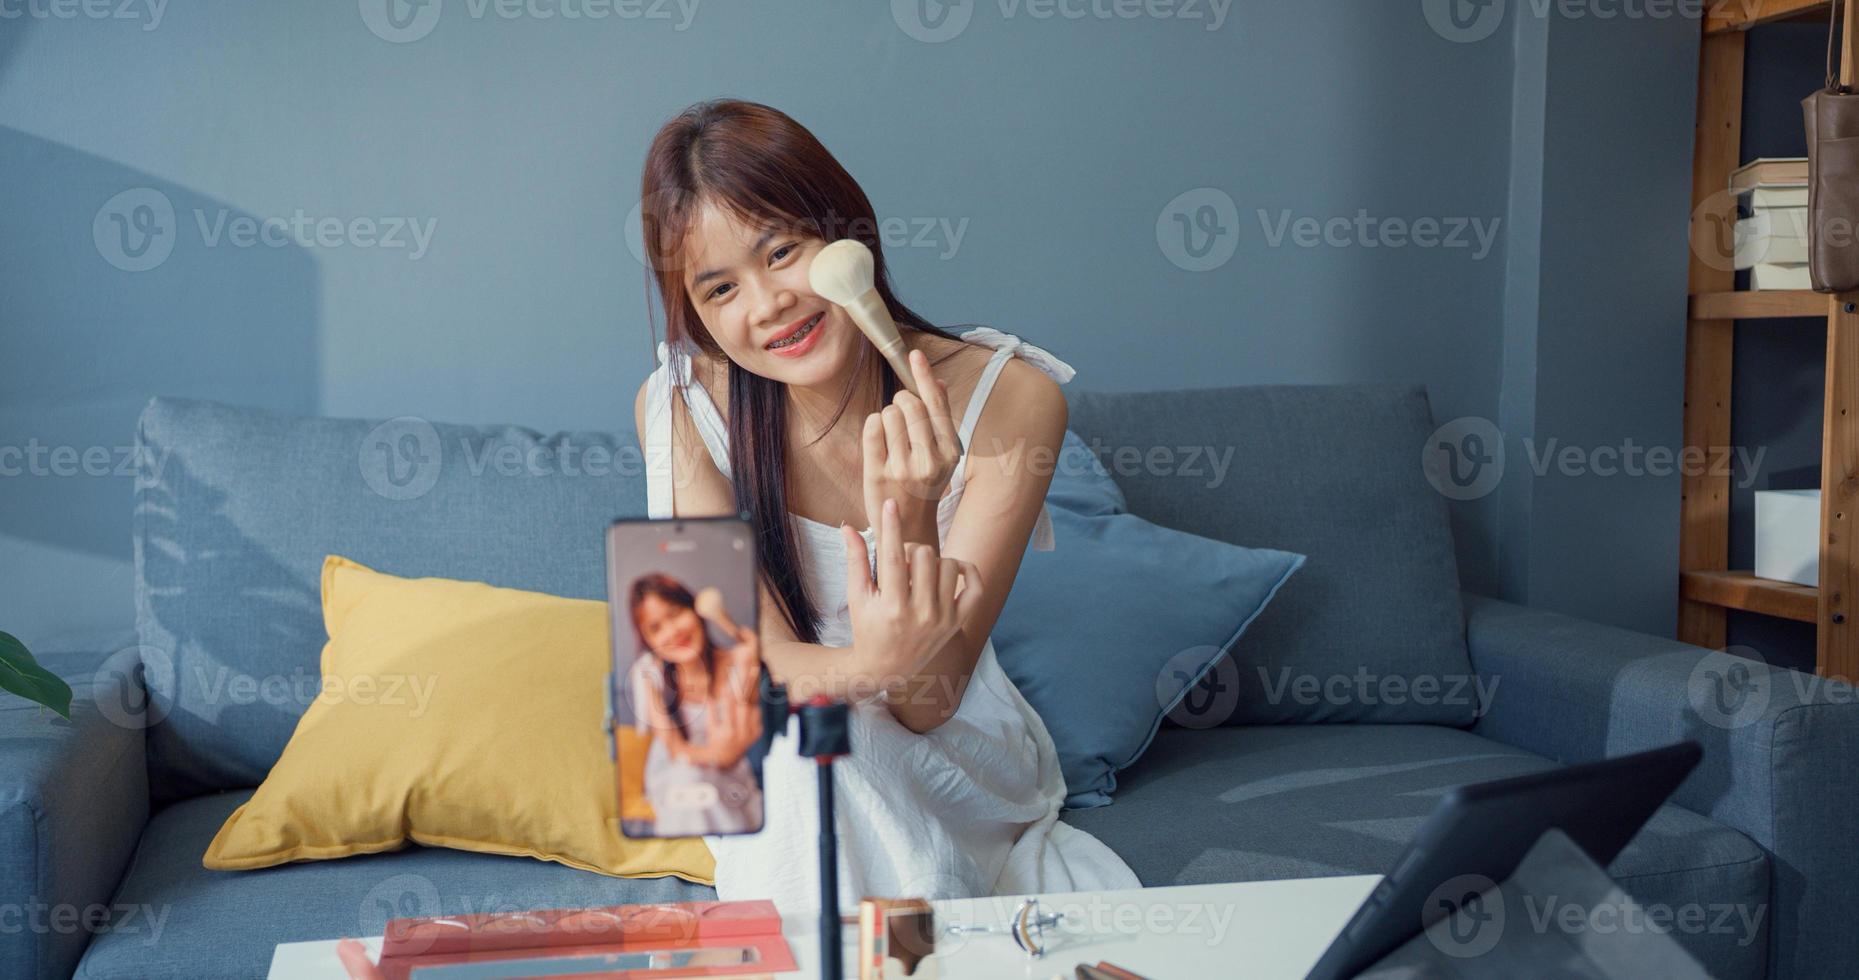 felice giovane ragazza asiatica trucco vlogger davanti alla fotocamera del telefono godere di parlare di revisione con il pubblico nel soggiorno a casa. concetto di pandemia di coronavirus a distanza sociale. libertà e concetto di stile di vita attivo. foto